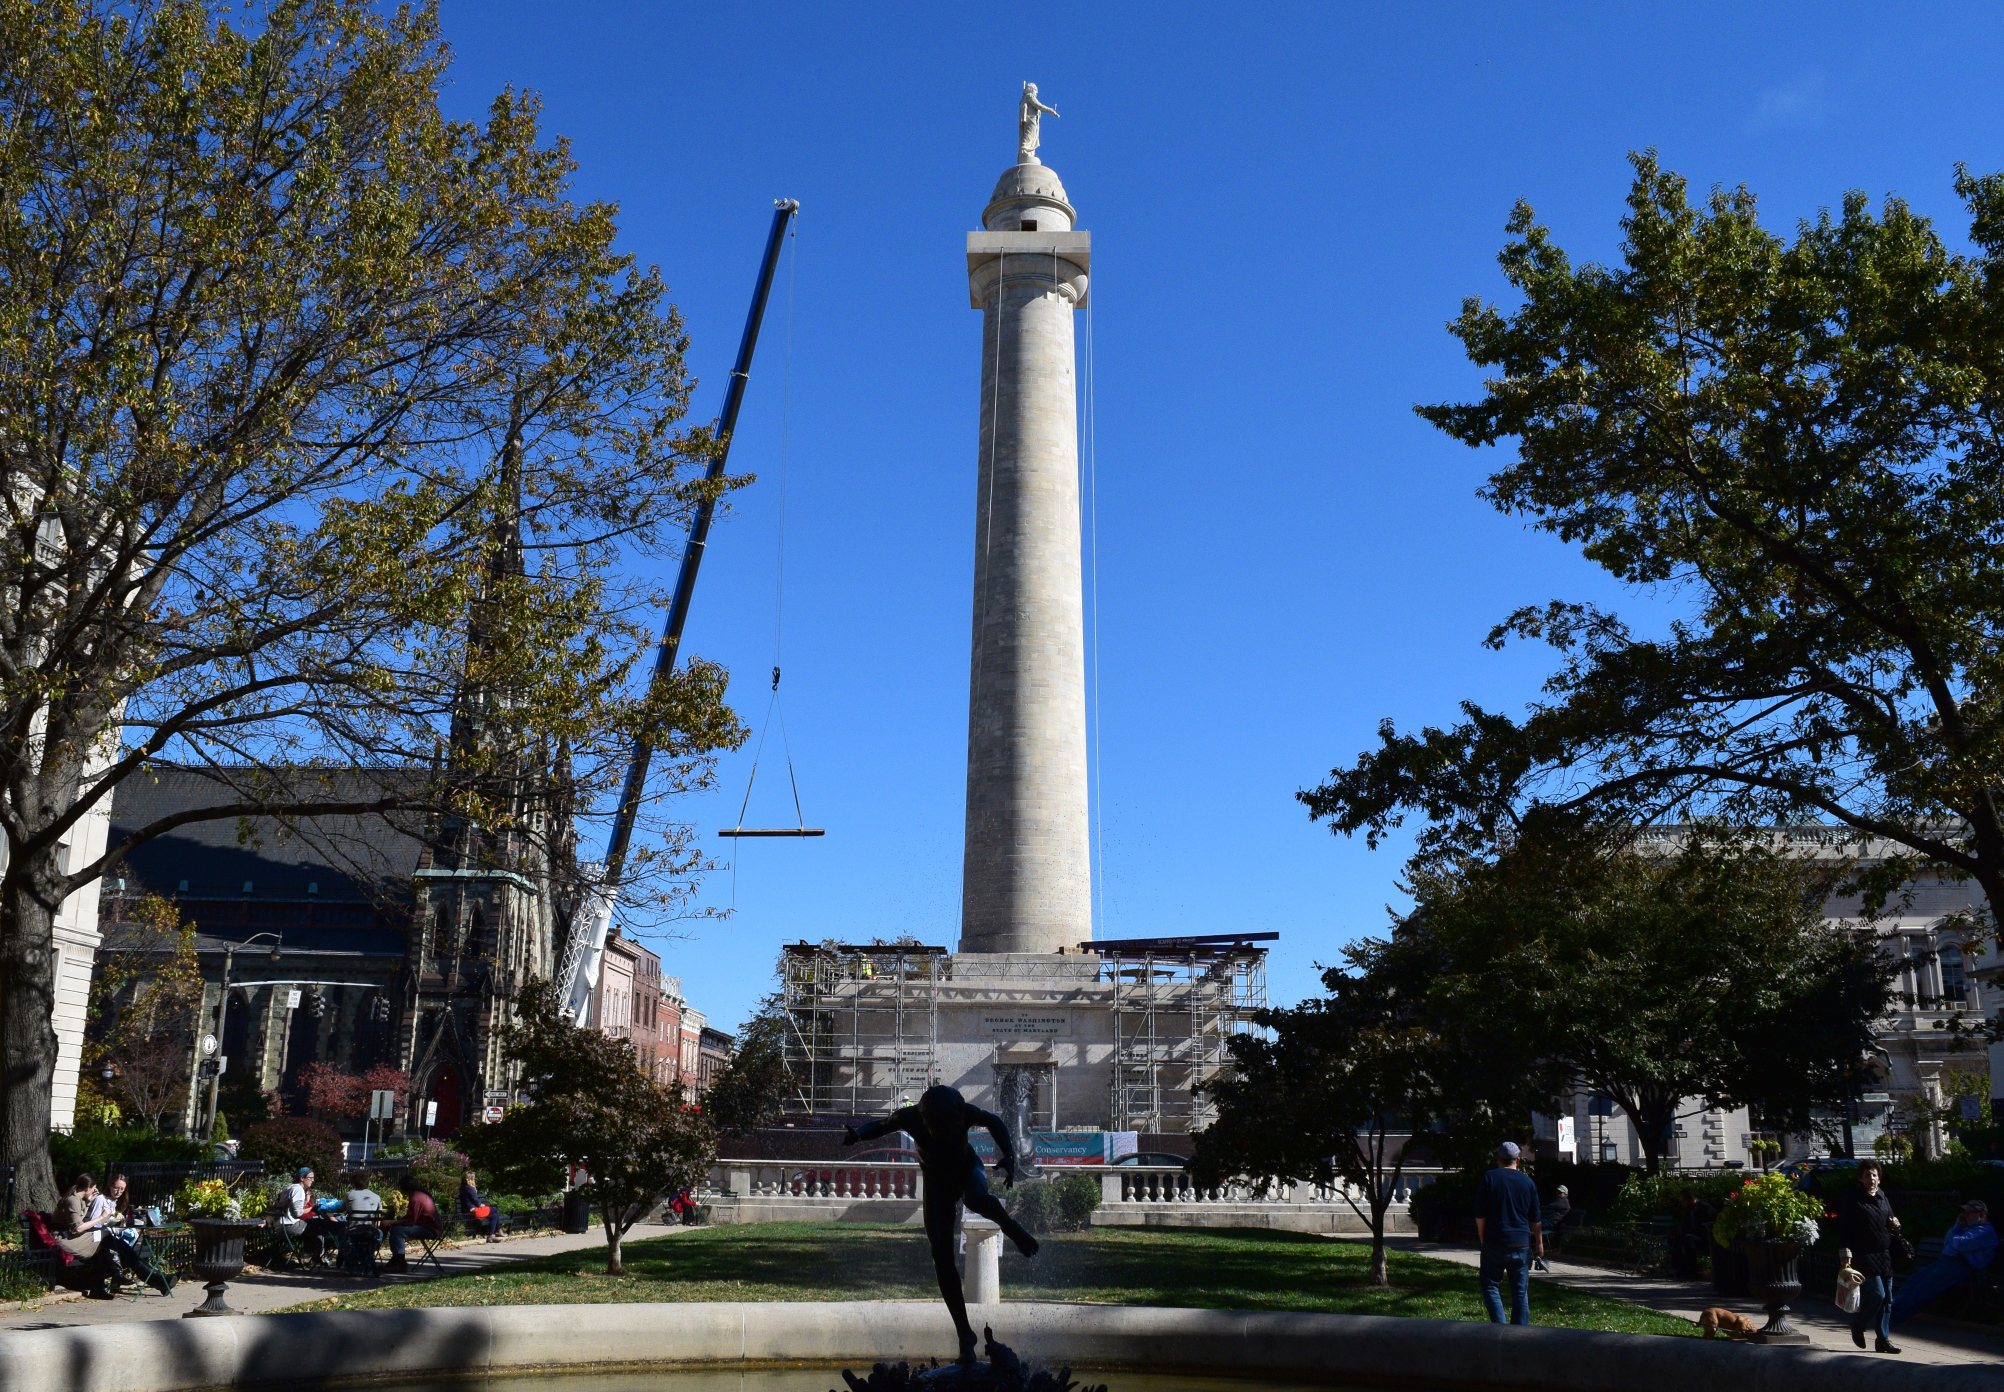 PHOTO: Washington Monument in Baltimore under restoration.